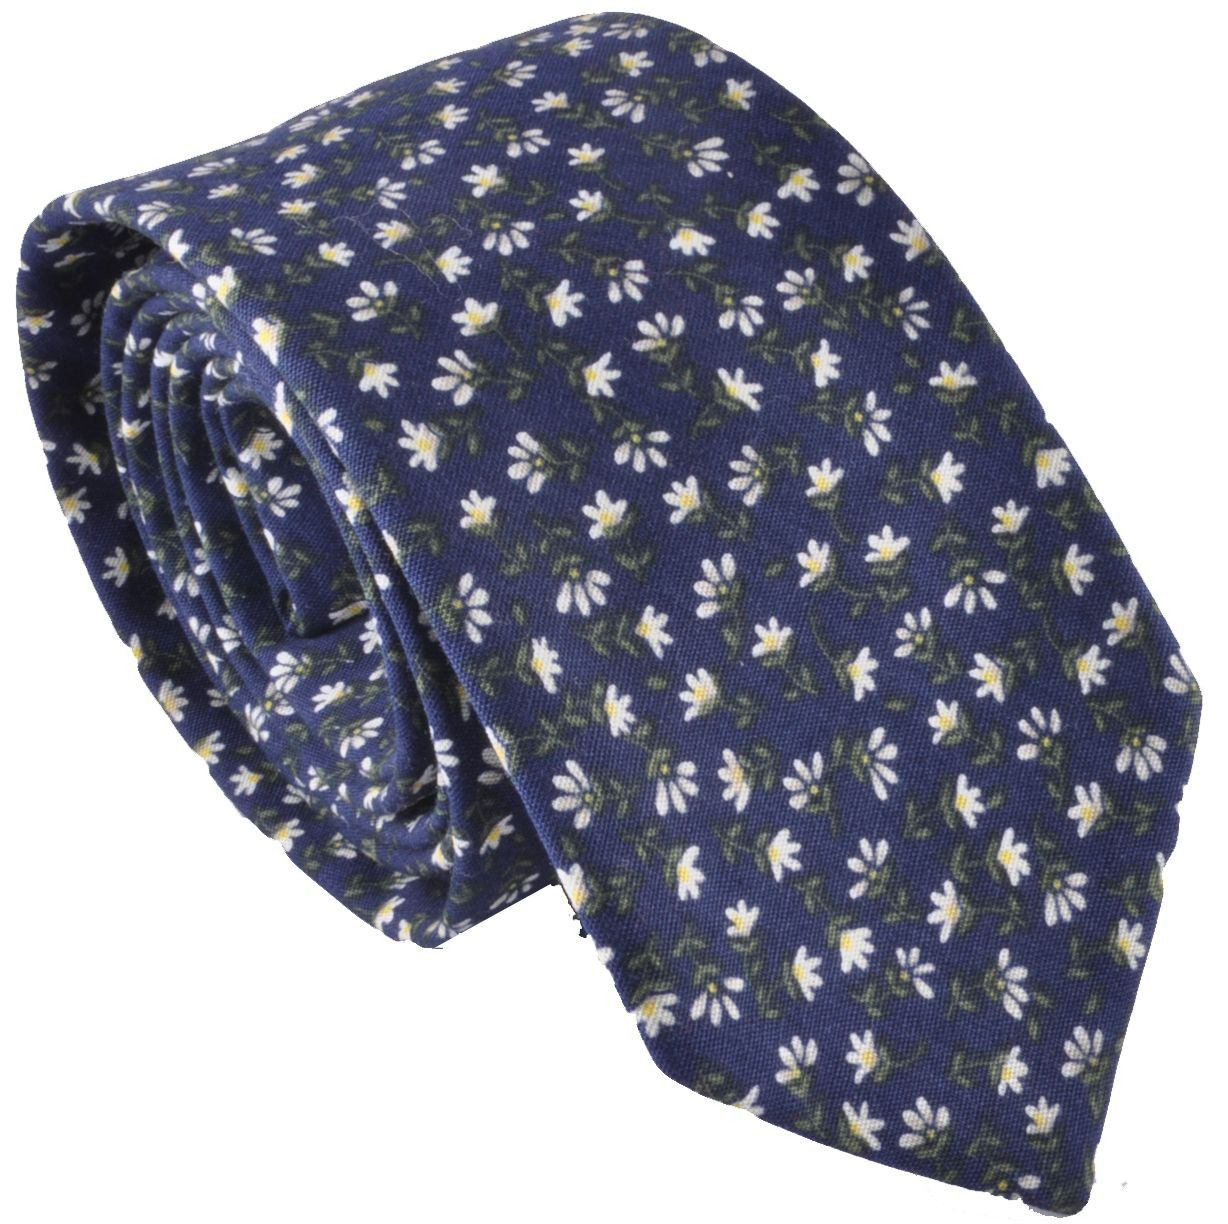 Галстук темно-синий в цветочек описание: Фасон - Узкий галстук, Материал - Хлопок, Цвет - Темно-синий, Размер - 5,5 см х 136 см, Страна производства - Турция.